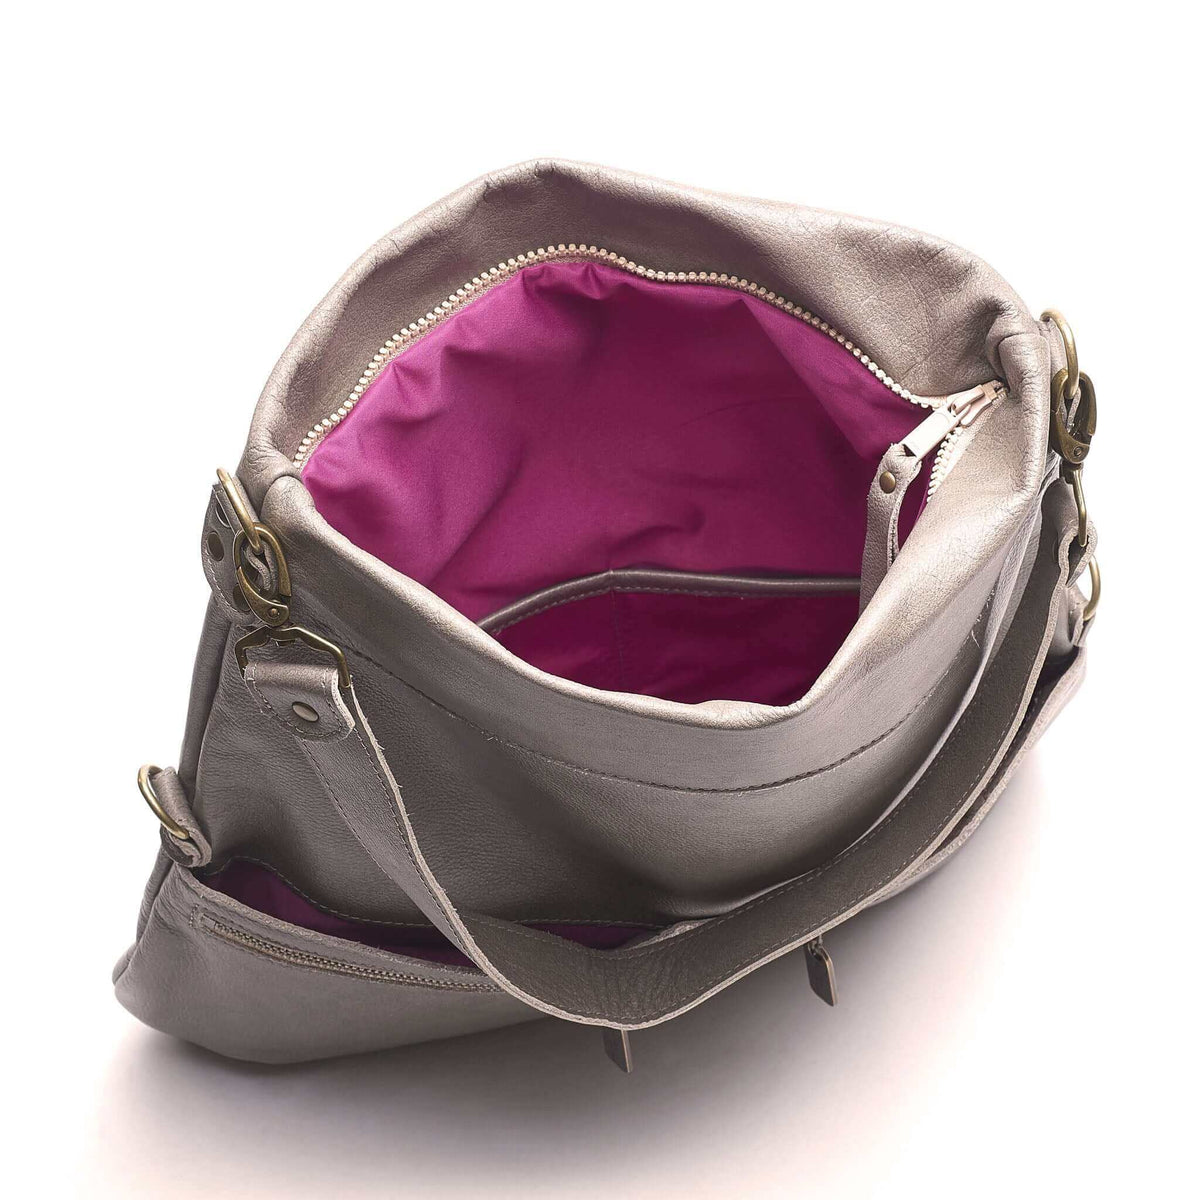 Grey 6-in-1 leather crossbody backpack - Brynn Capella, USA (inside)